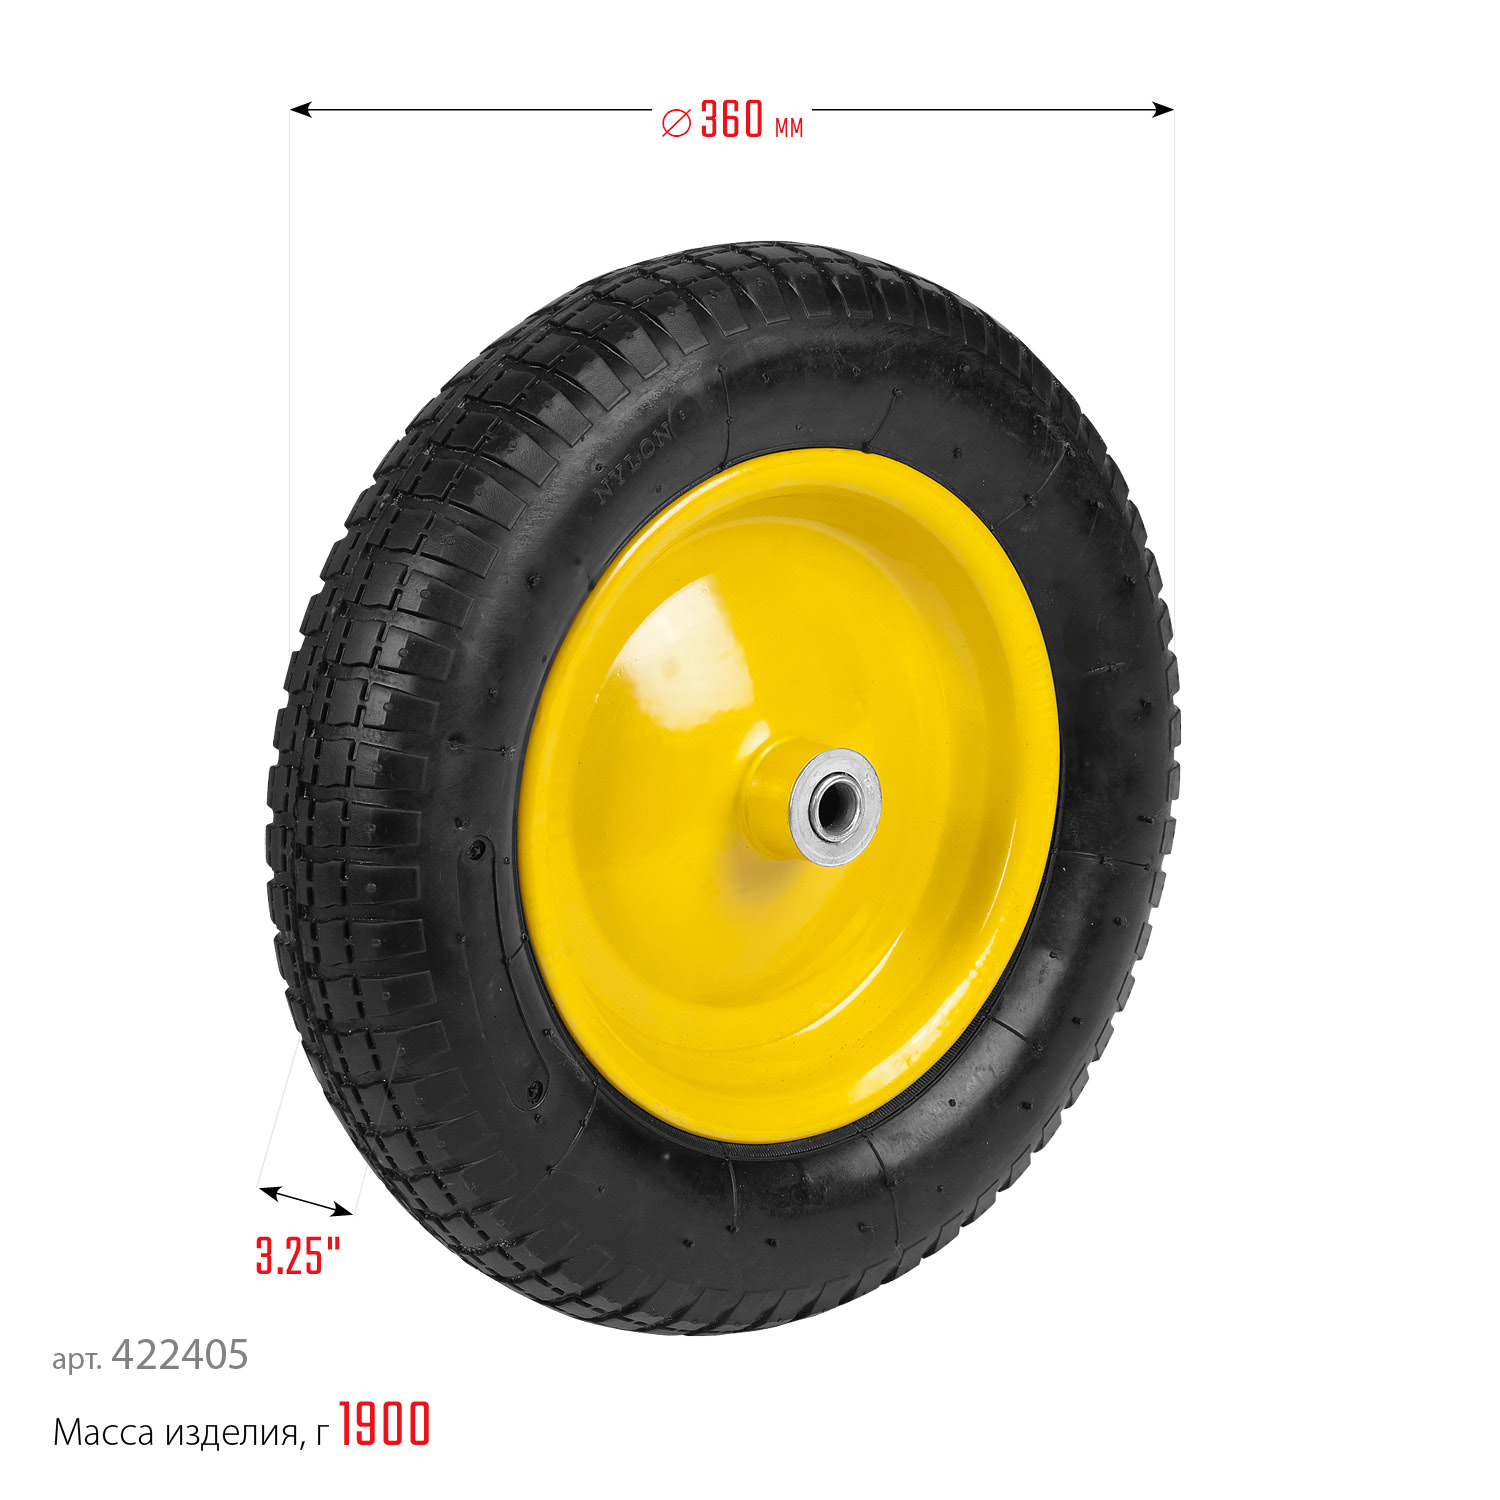 GRINDA WP-16, 3.25″ х 360 мм, для тачек (арт. 422396, 422399), пневматическое колесо (422405)